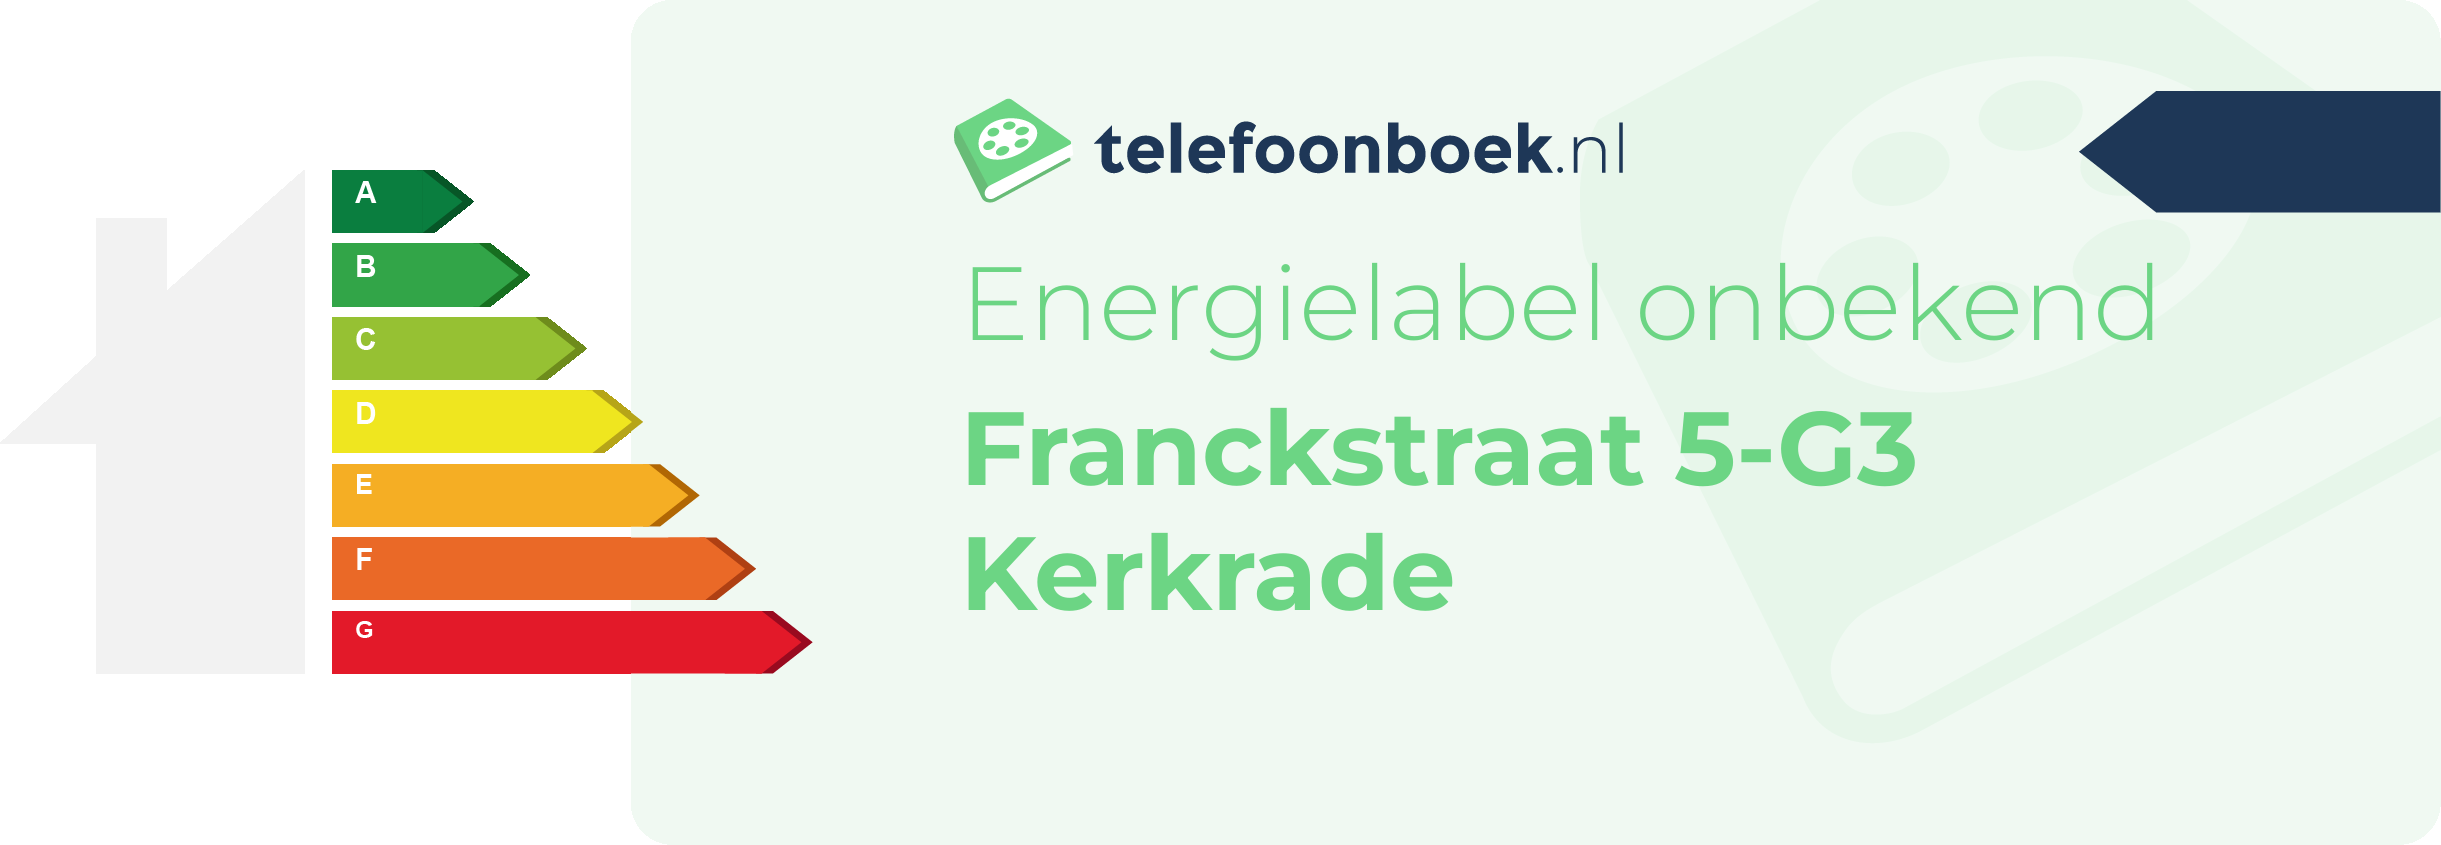 Energielabel Franckstraat 5-G3 Kerkrade